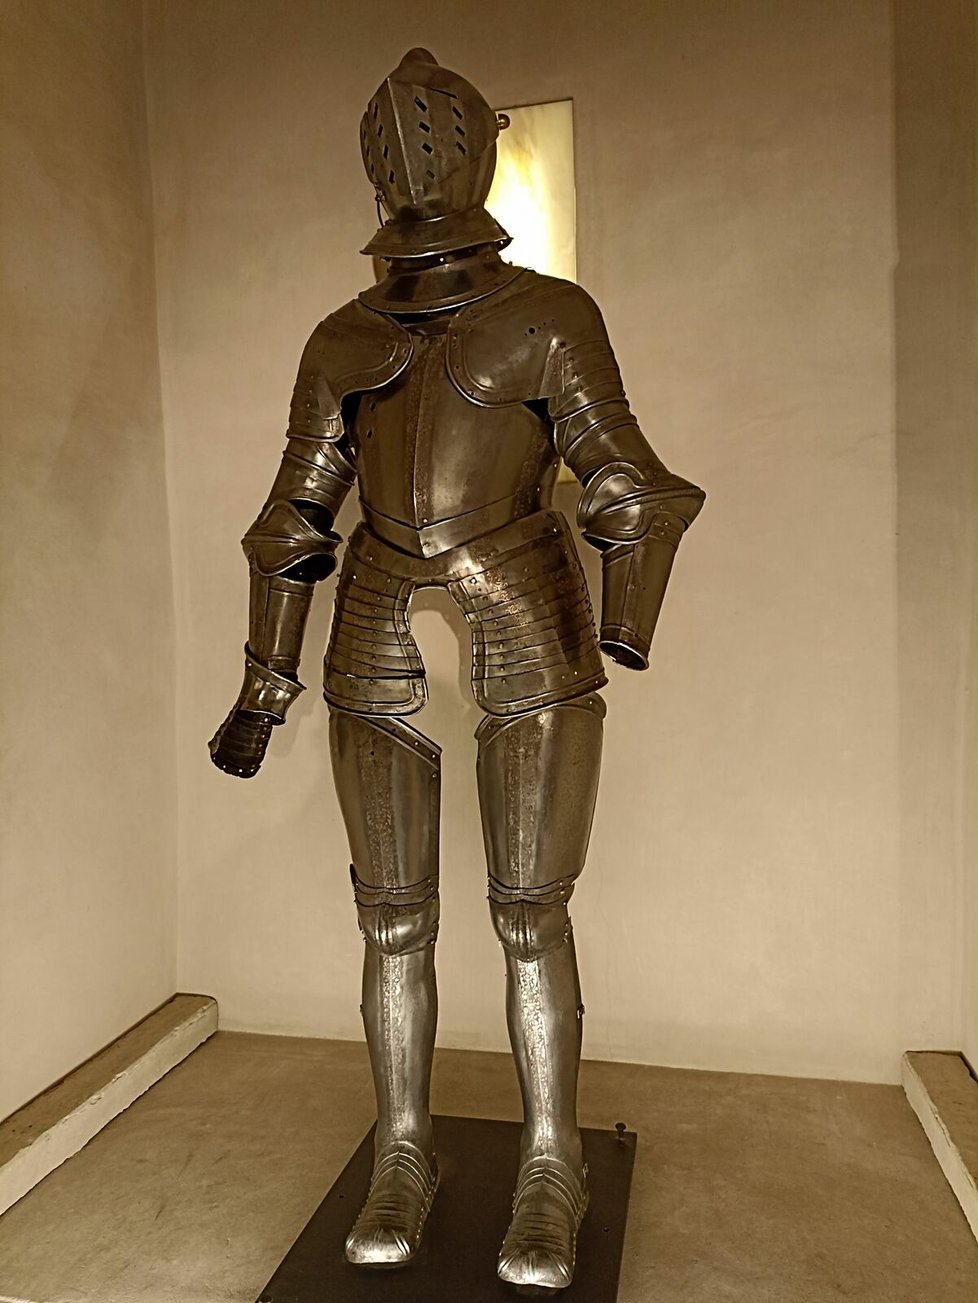 Plátová renesanční zbroj a uzavřenou přilbou, dílo německého zbrojíře kolem roku 1540.